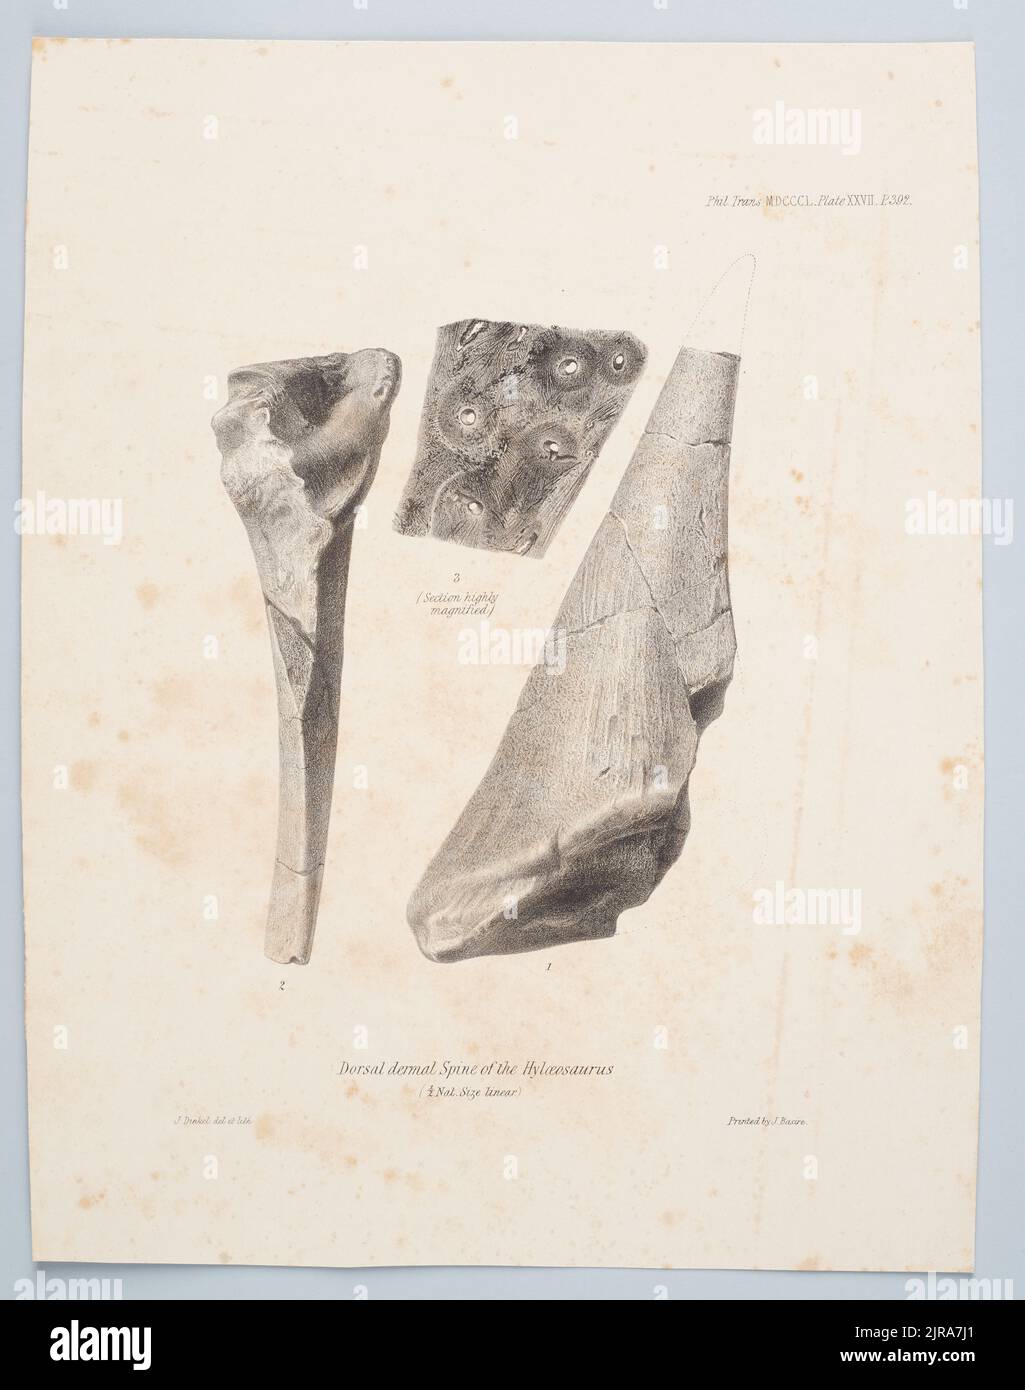 Colonna dermica dorsale dell'Hyloeosaurus, 1850, di Joseph Dinkel, James Basire. Foto Stock